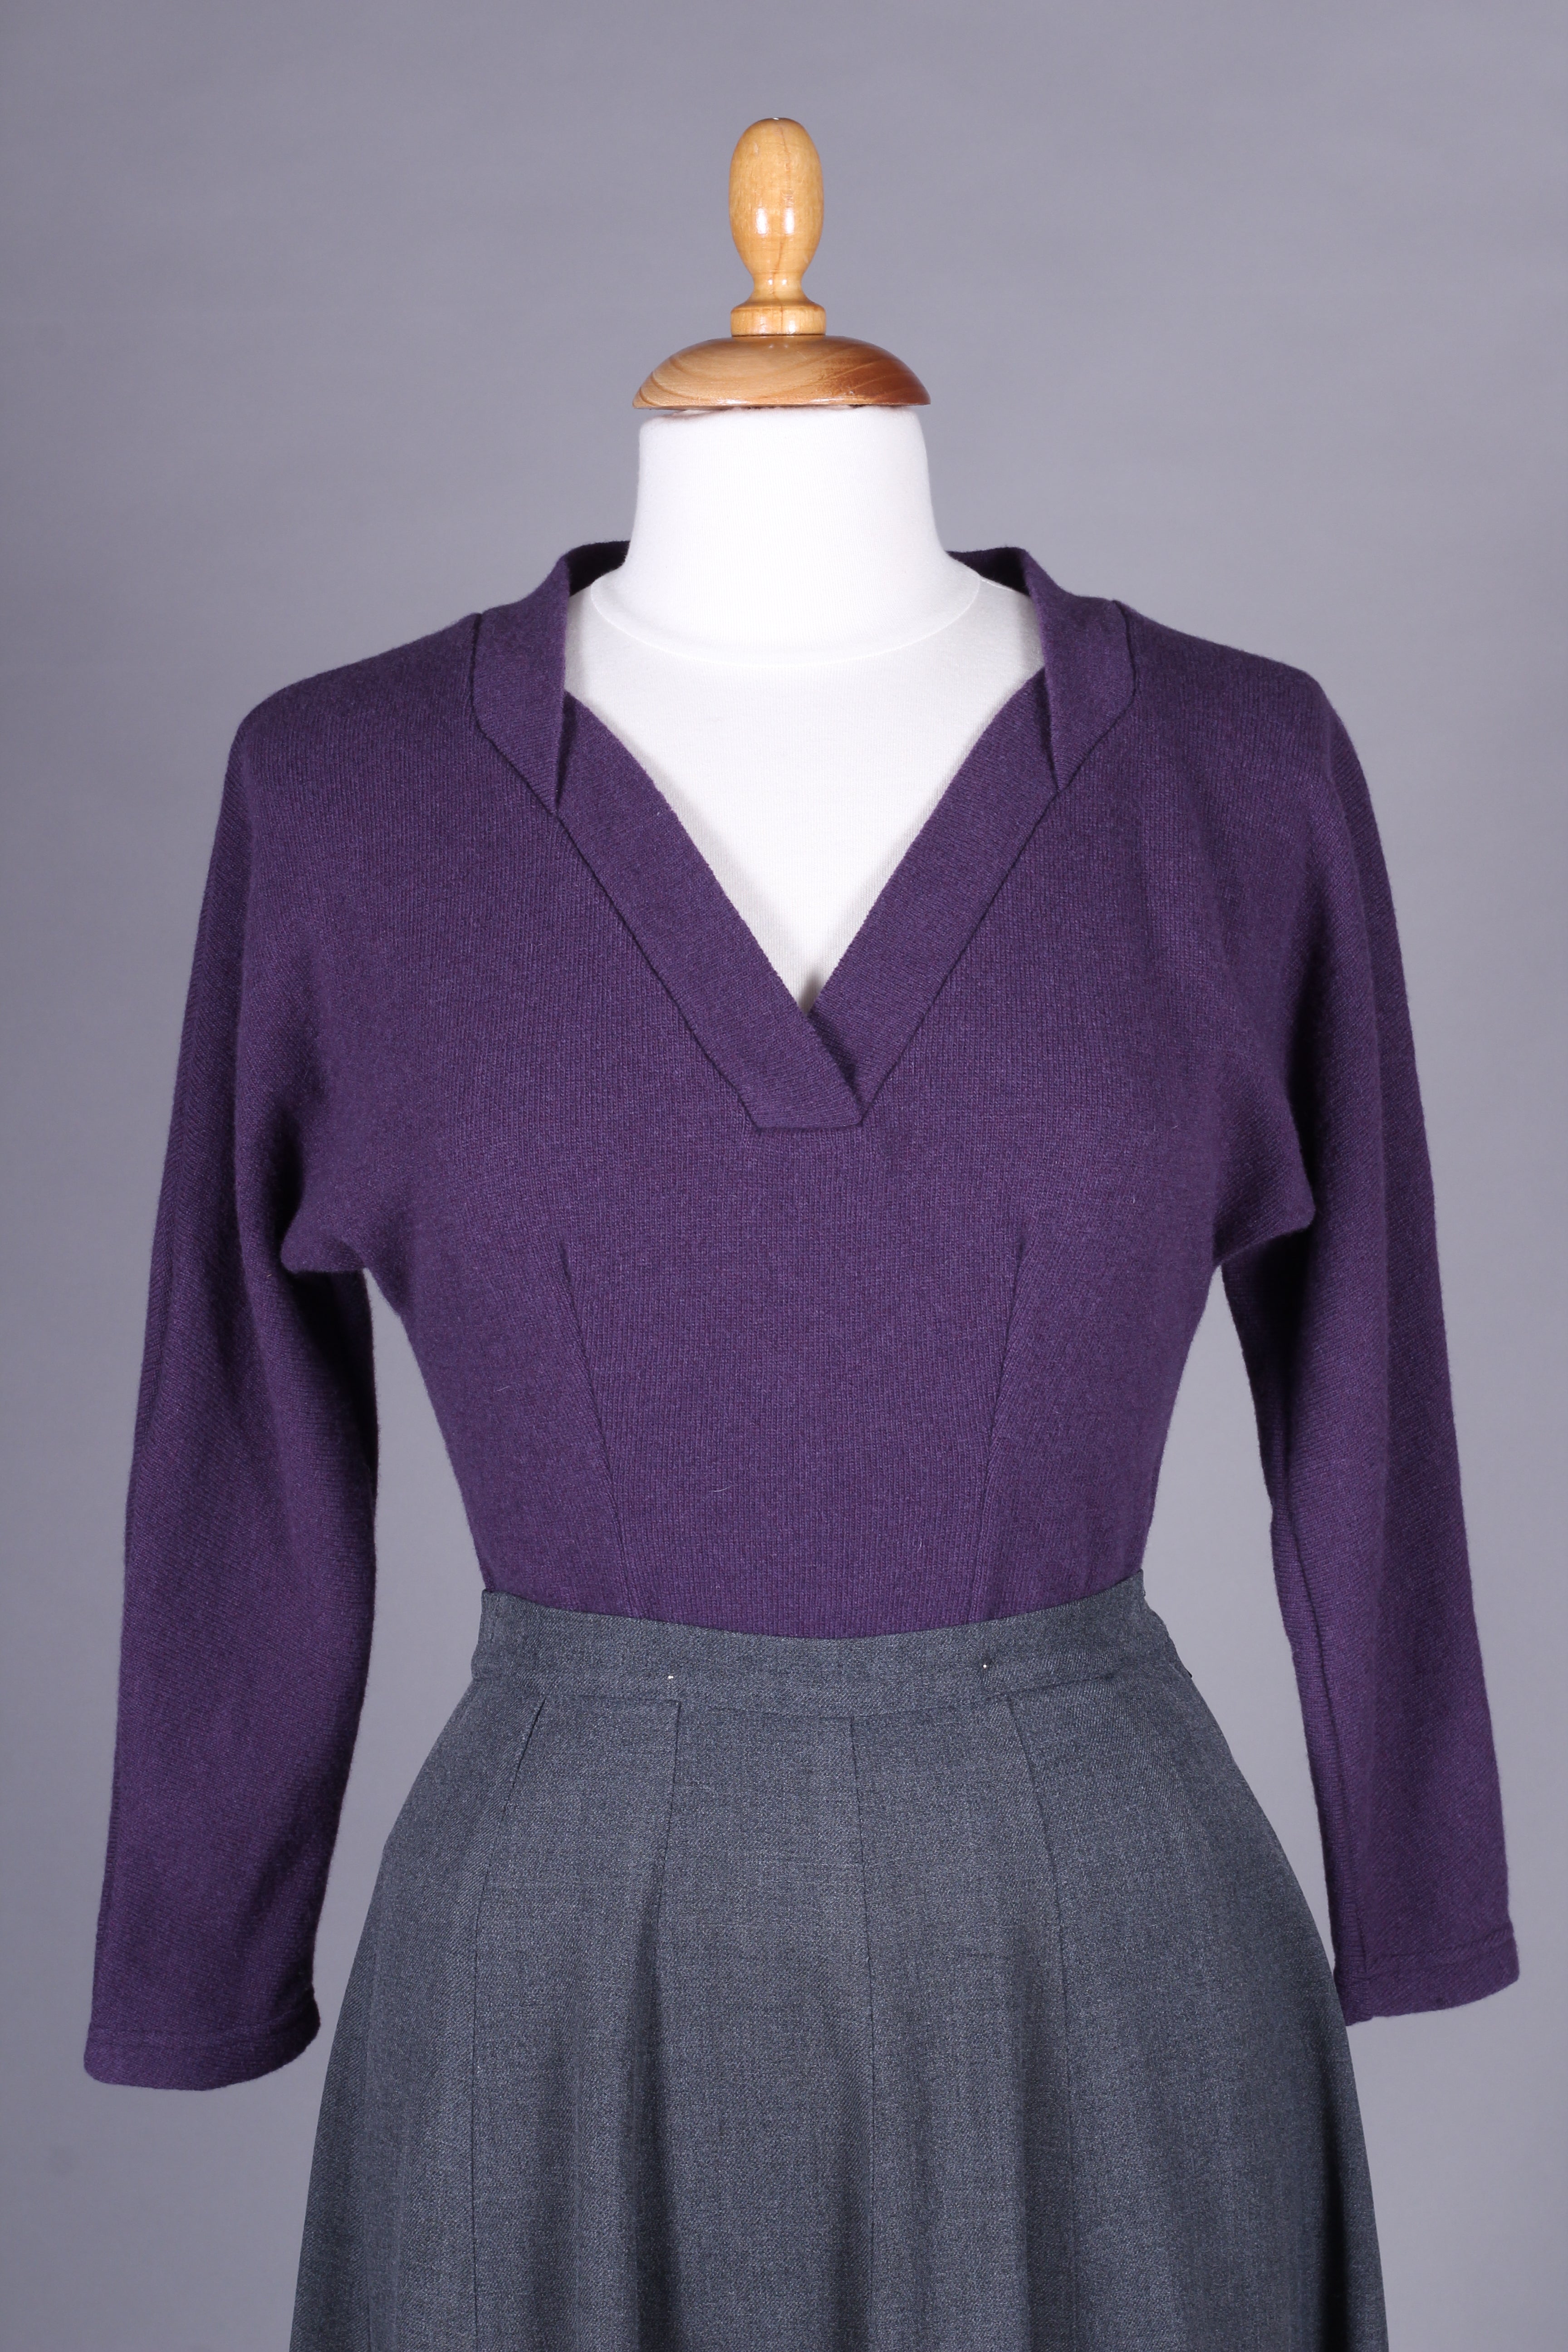 1950’er vintage style pullover - Mørk lavendel - Elsa